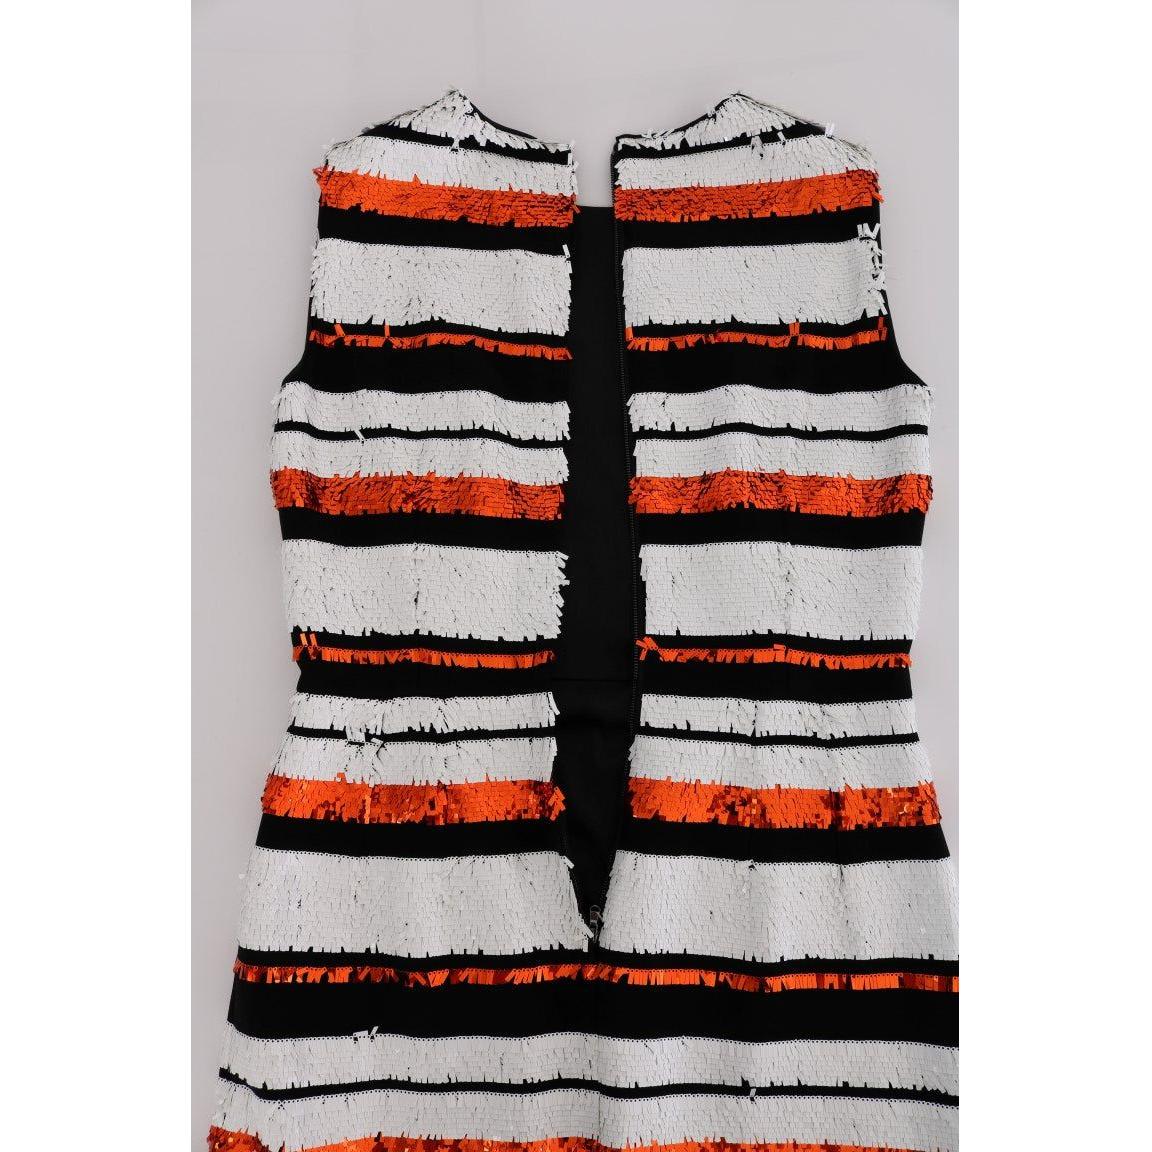 Dolce & Gabbana Sleeveless Striped Sheath Dress multicolored-striped-sequined-stretch-dress 441472-multicolored-striped-sequined-stretch-dress-5.jpg